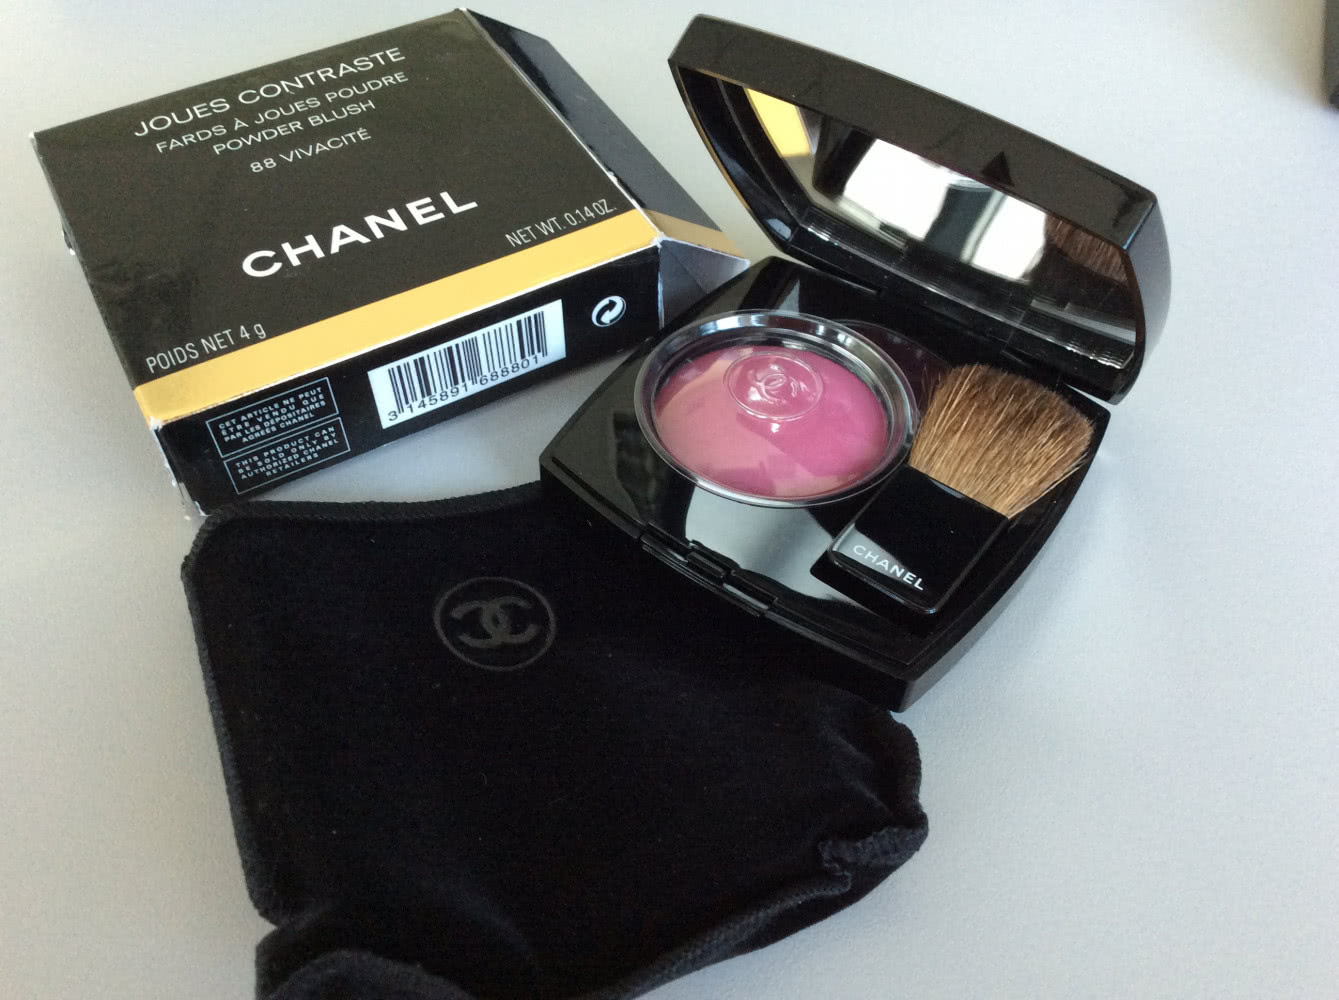 Chanel vivacite 88, foschia rosa 430,rose initial 72